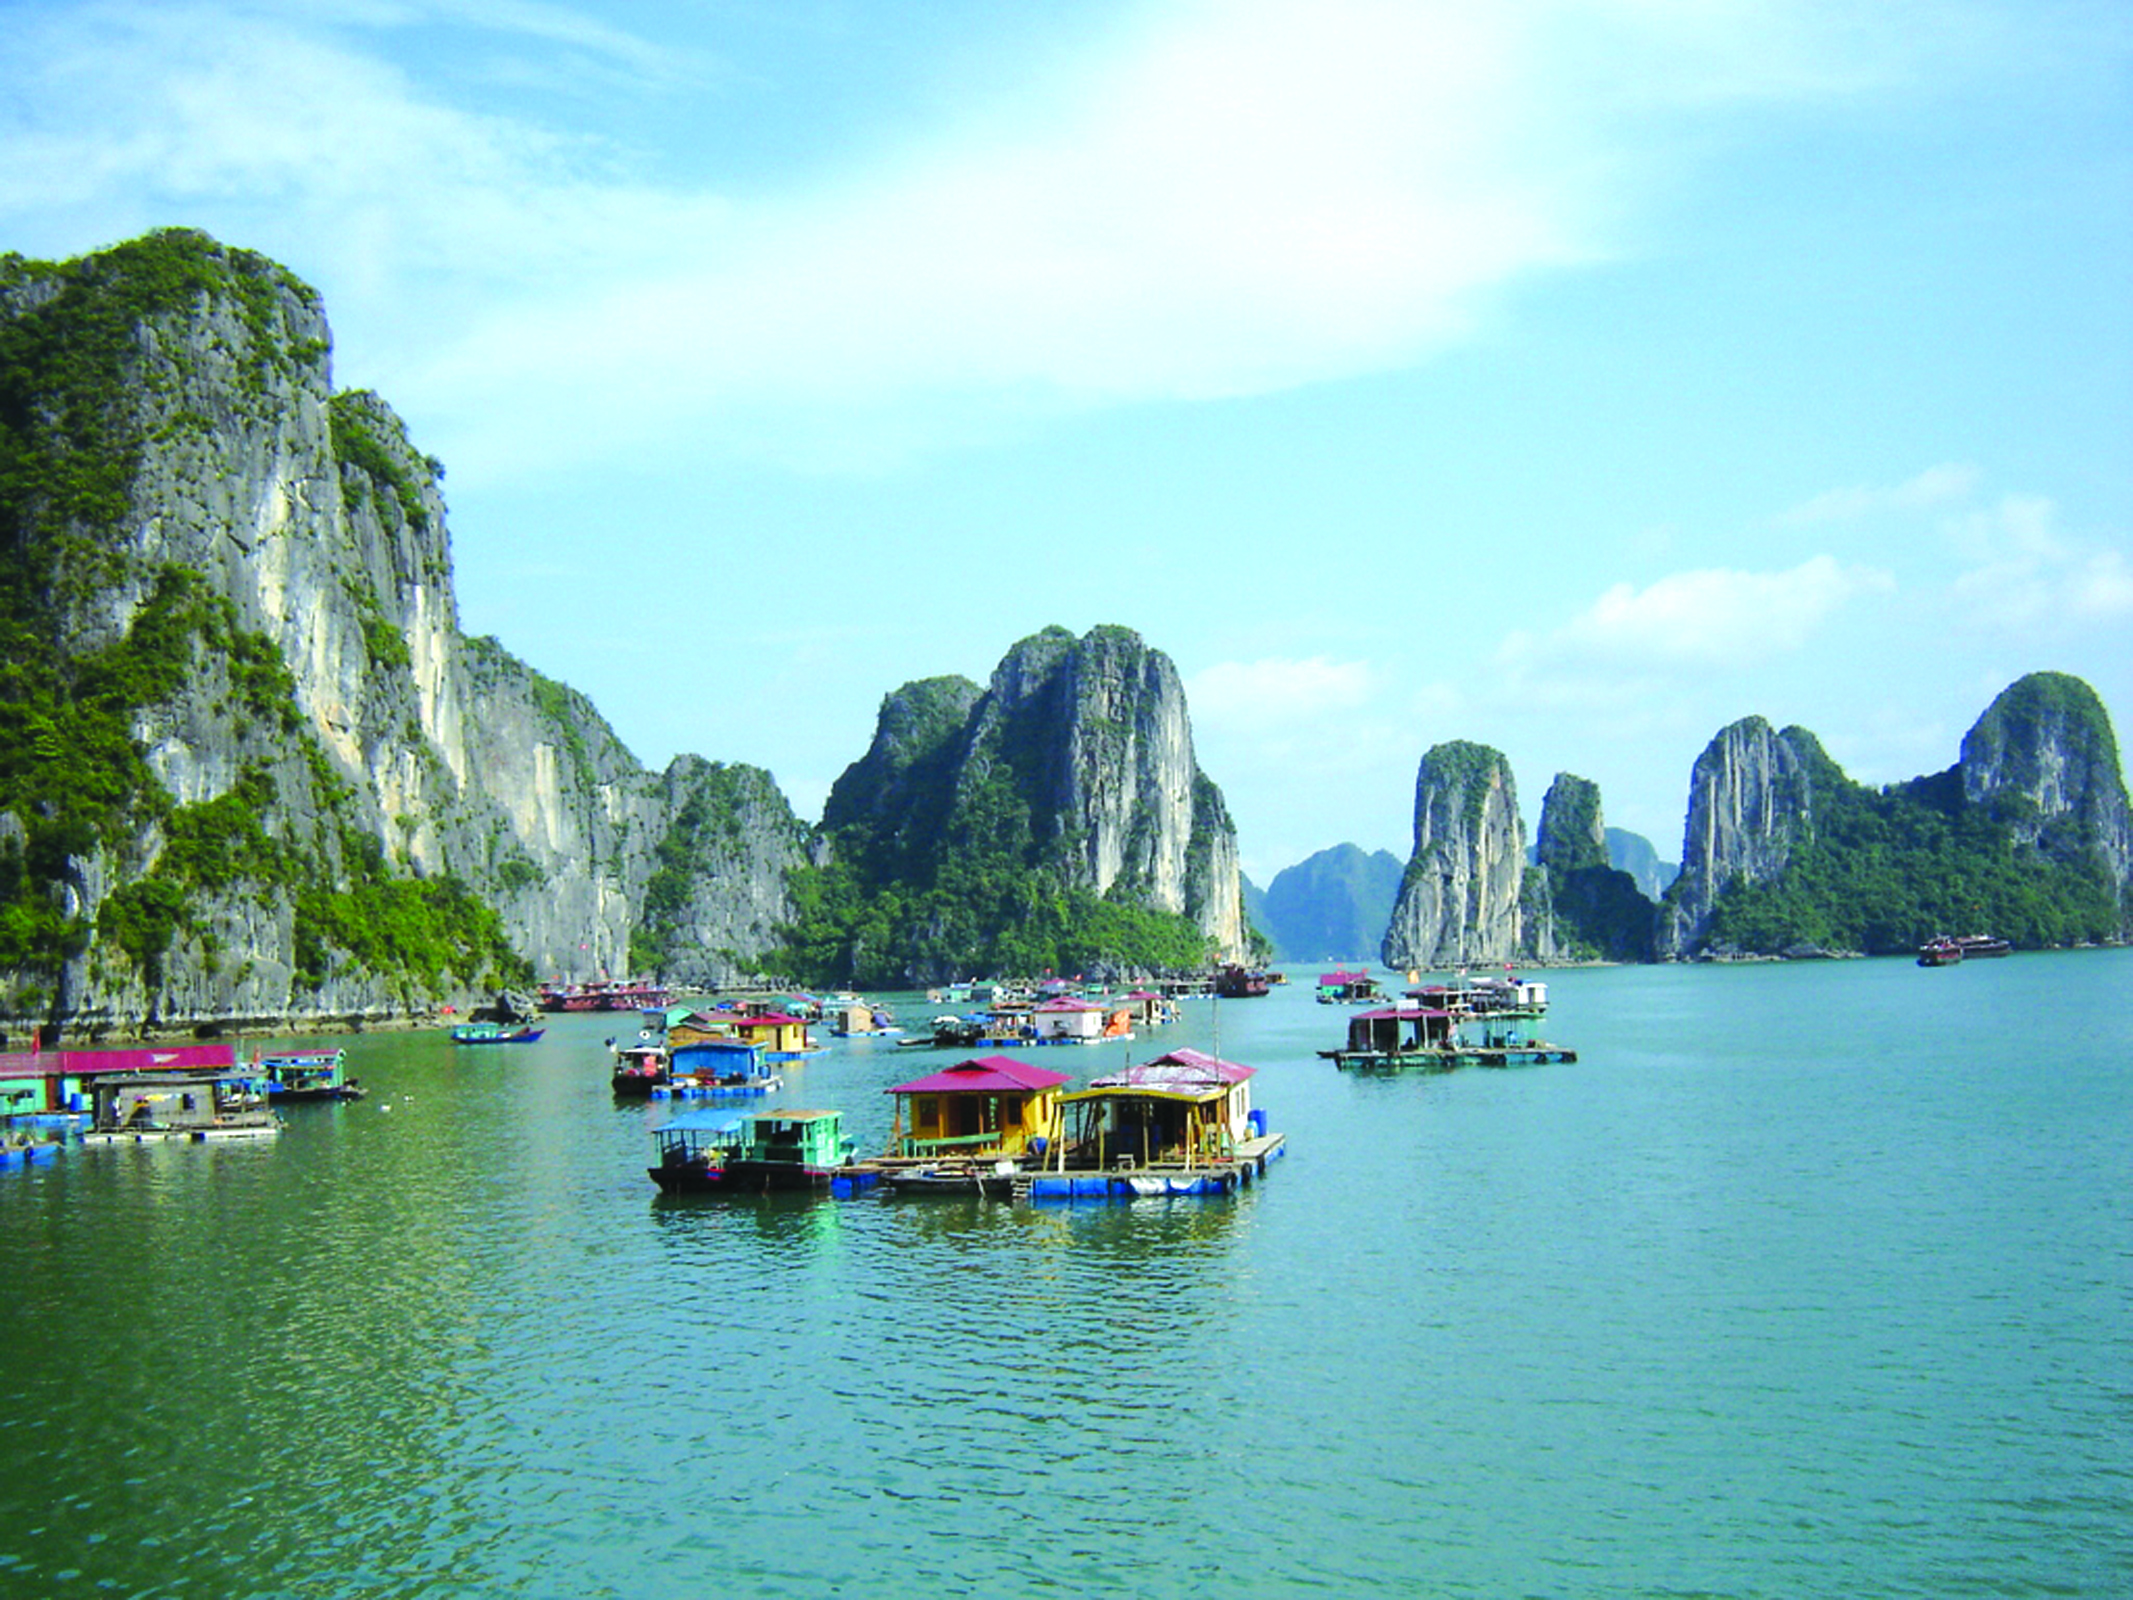 Du lịch Việt Nam là một trải nghiệm tuyệt vời và đầy thú vị. Quốc gia này có rất nhiều địa điểm đẹp và đa dạng, từ các thành phố lớn đến vùng đất hoang sơ. Hãy xem hình ảnh để tìm hiểu thêm về các địa điểm du lịch đẹp và thú vị ở Việt Nam và lên kế hoạch cho chuyến đi của bạn ngay bây giờ!